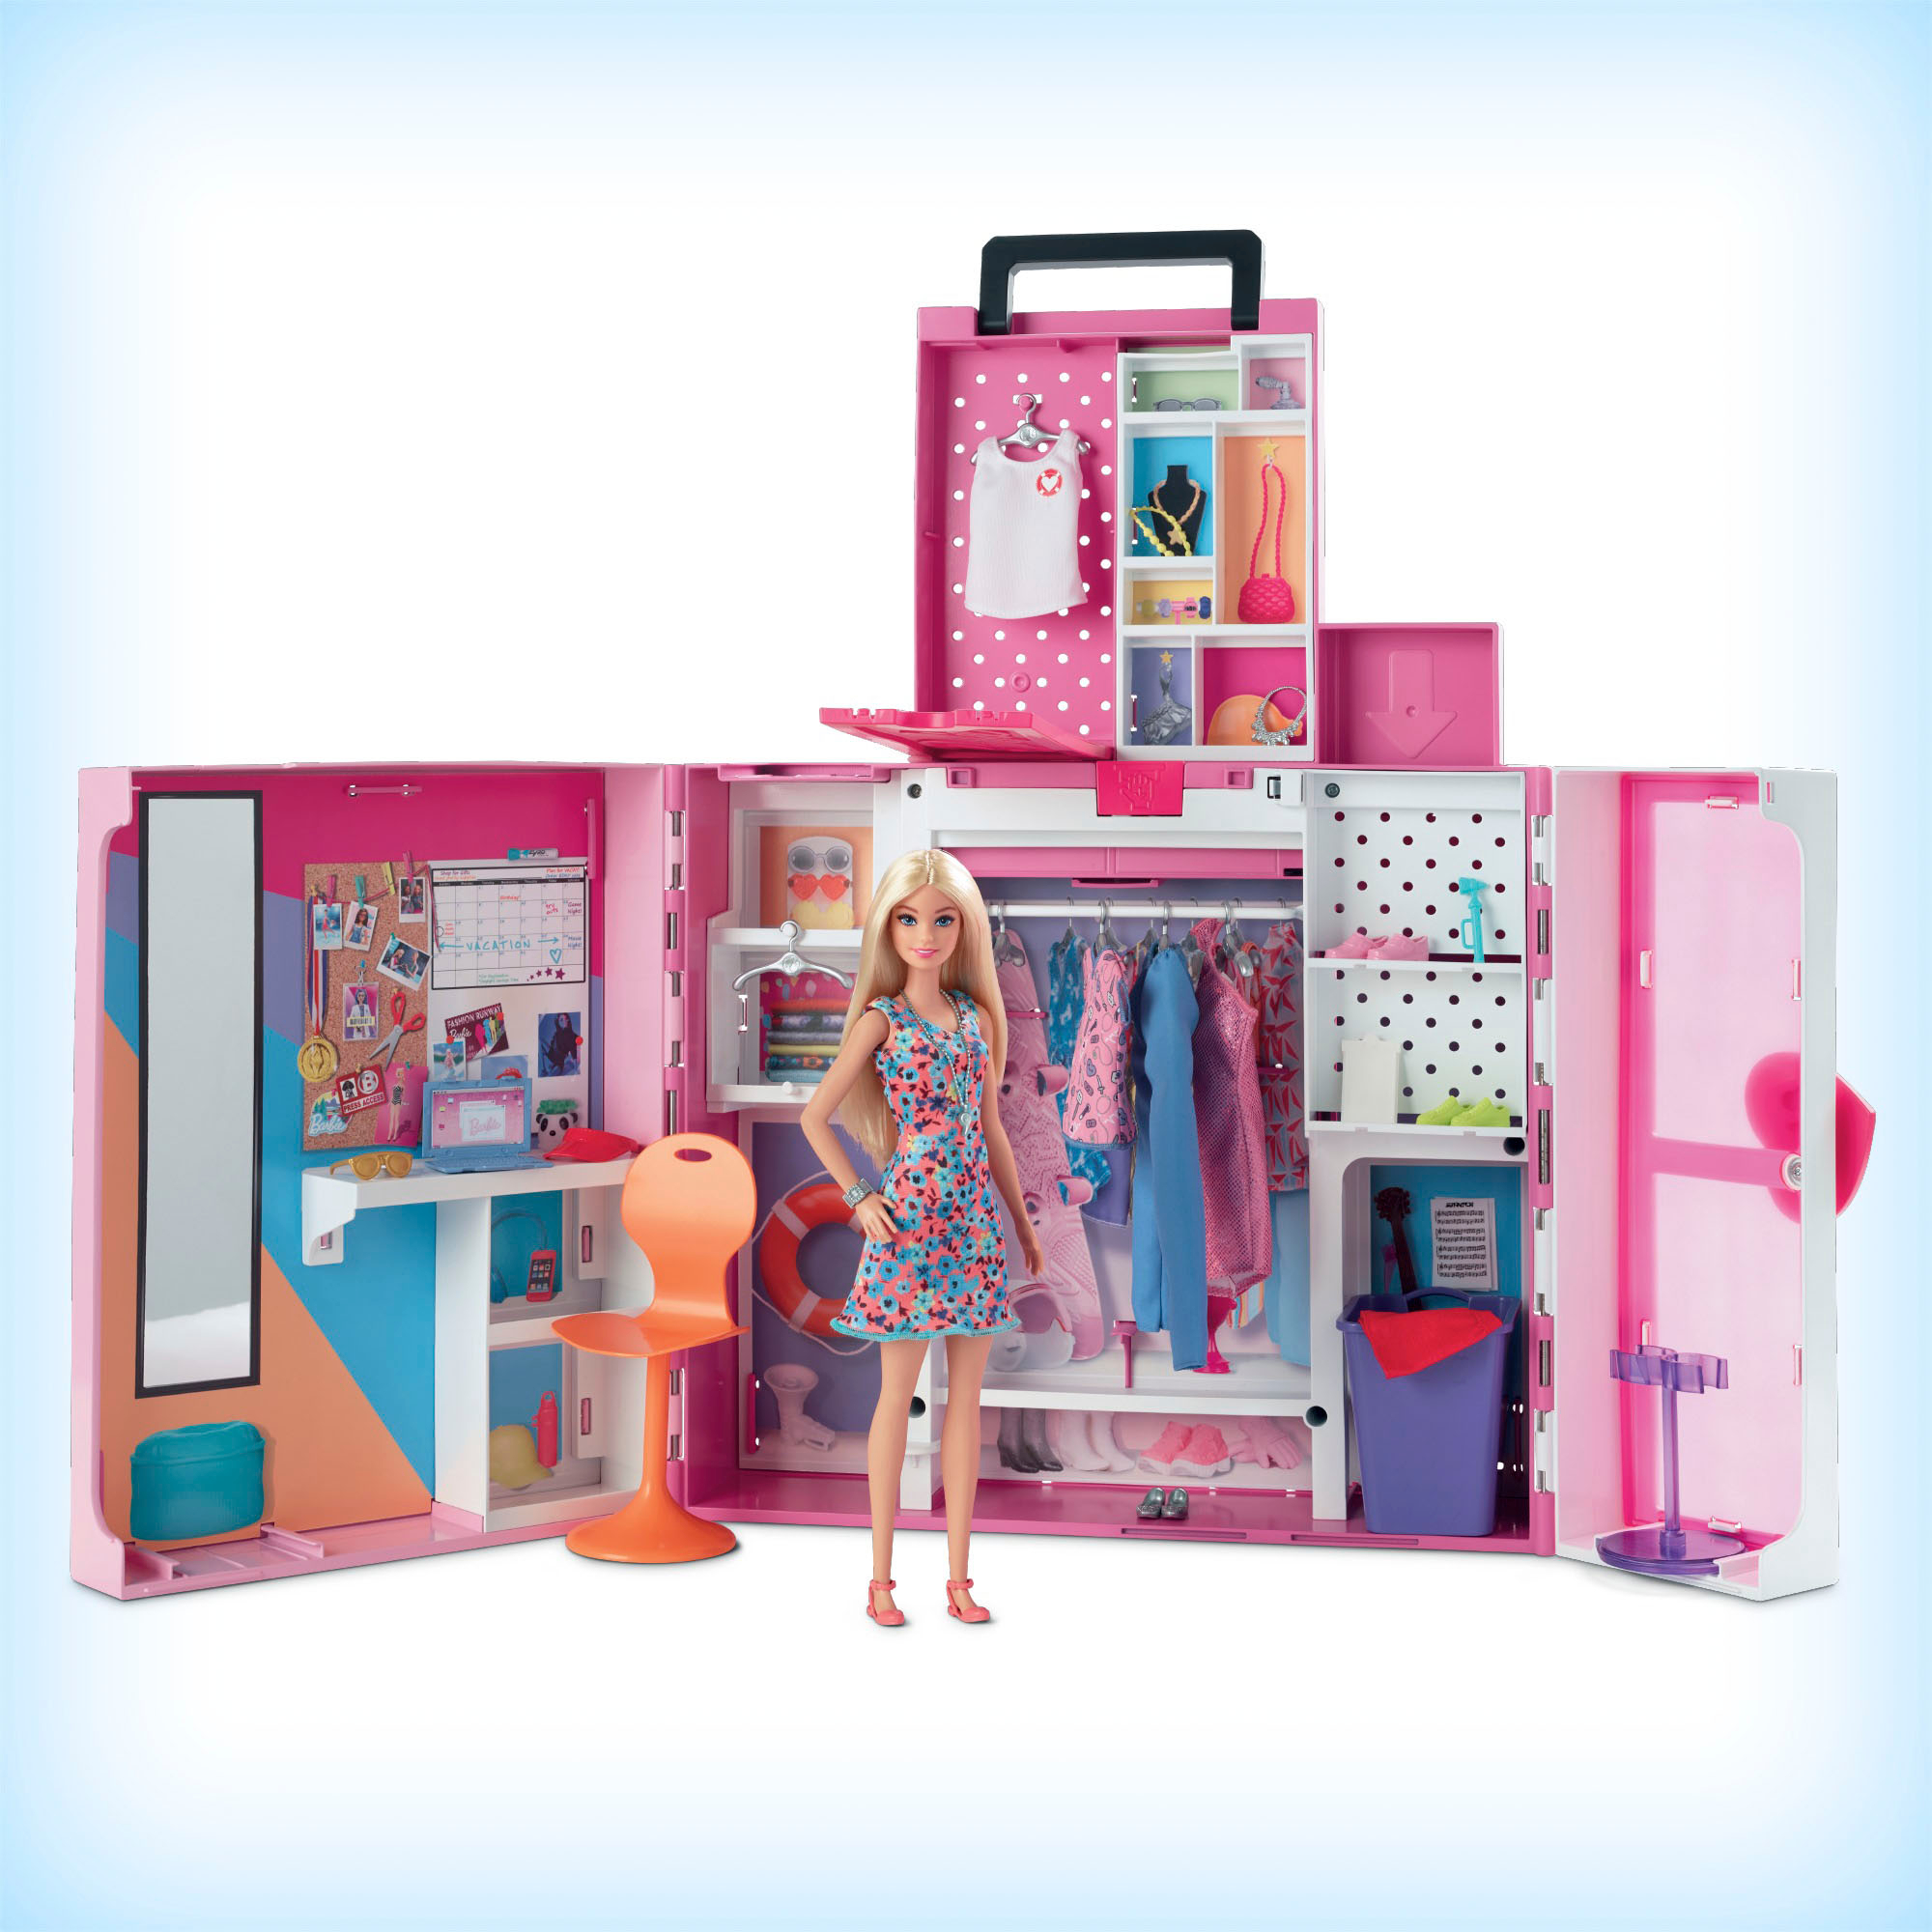 Barbie Clothes, Shop 45 items